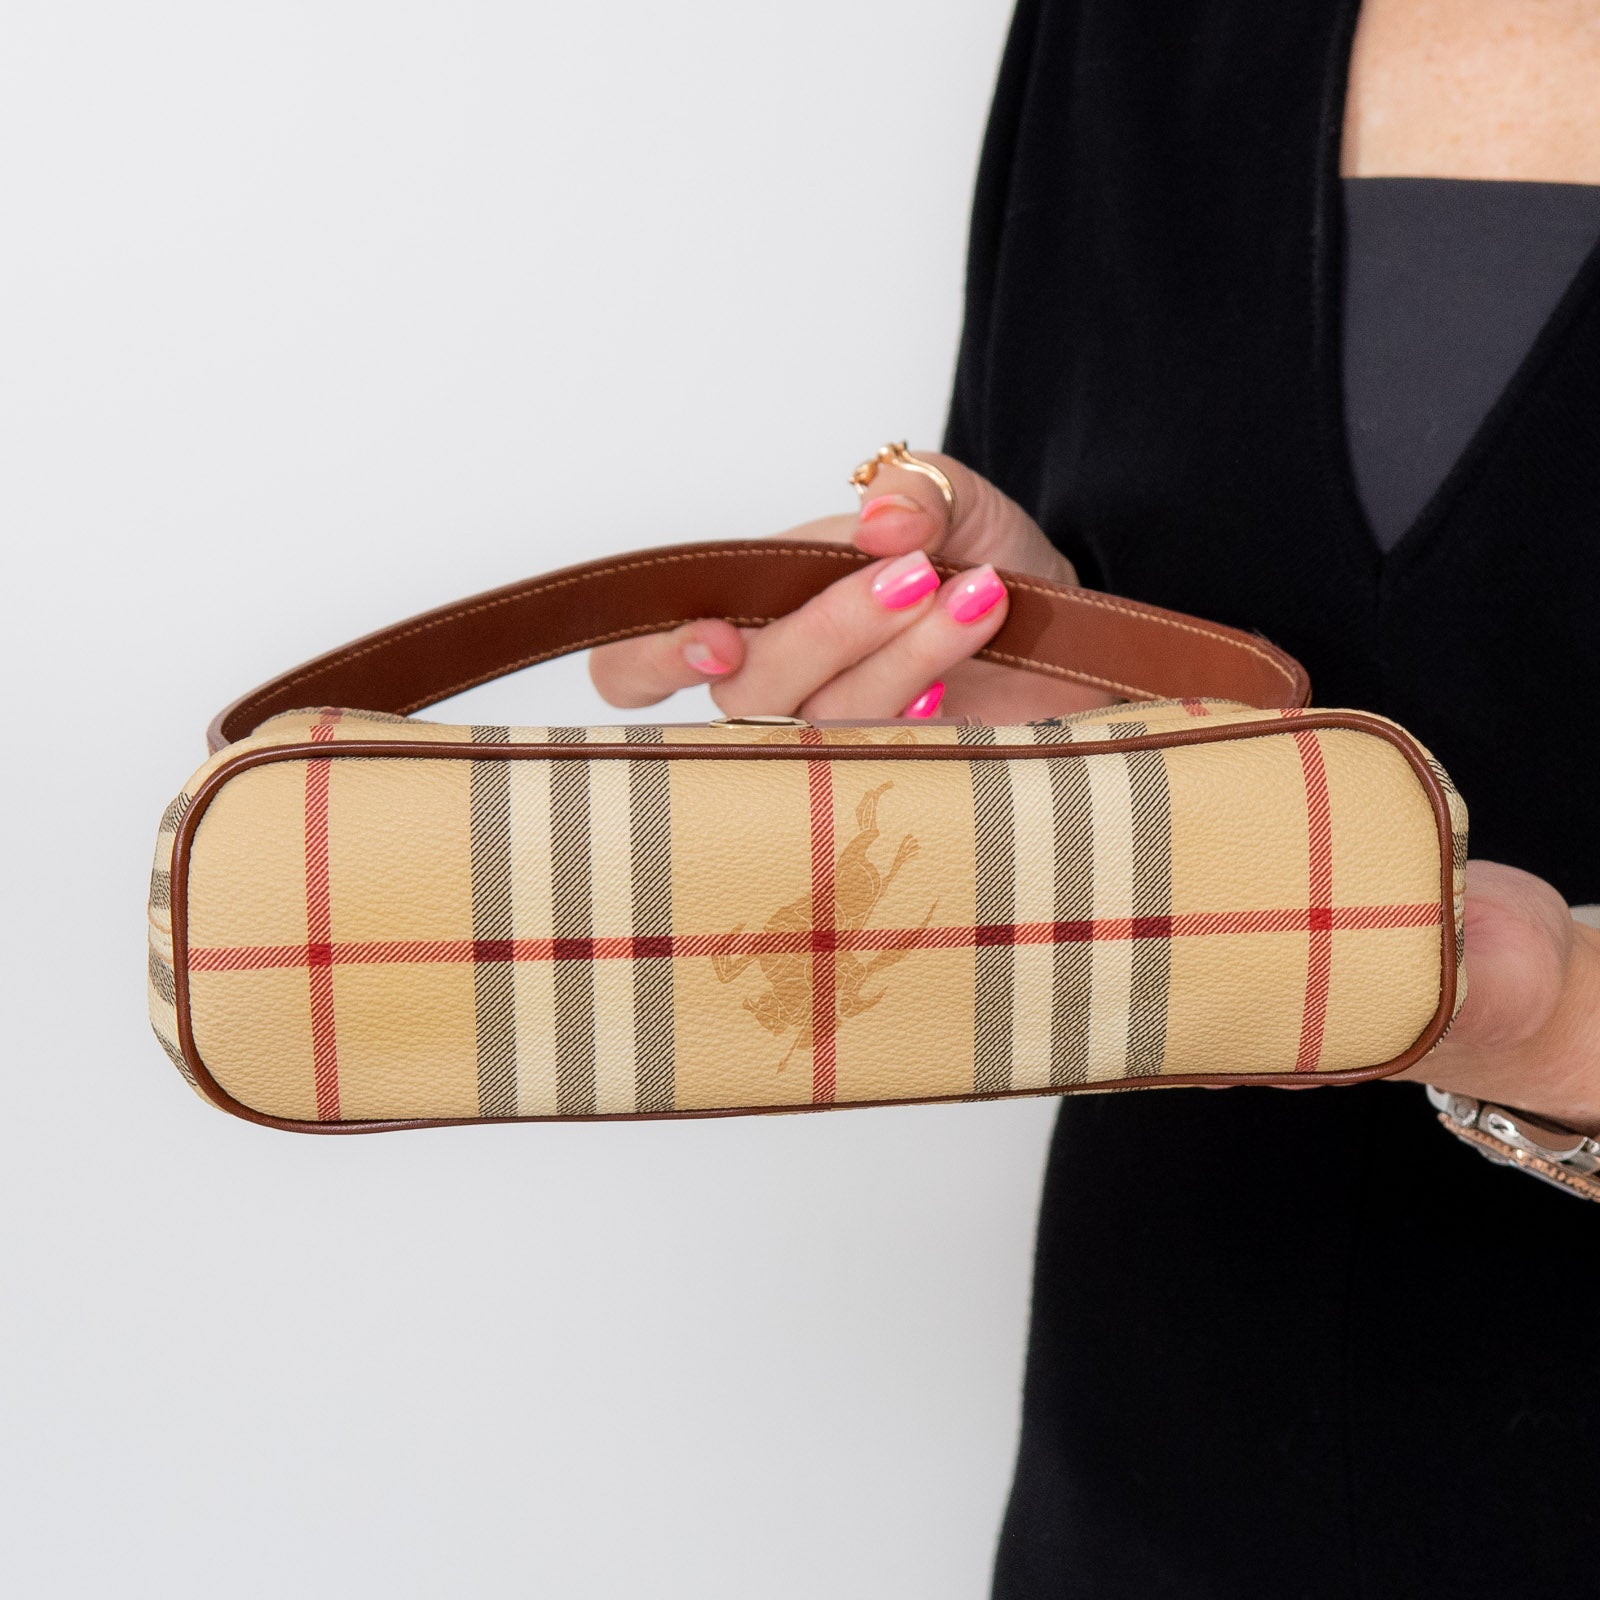 Burberry Brown Check Mini Leather Handle Bag - Image 5 of 7